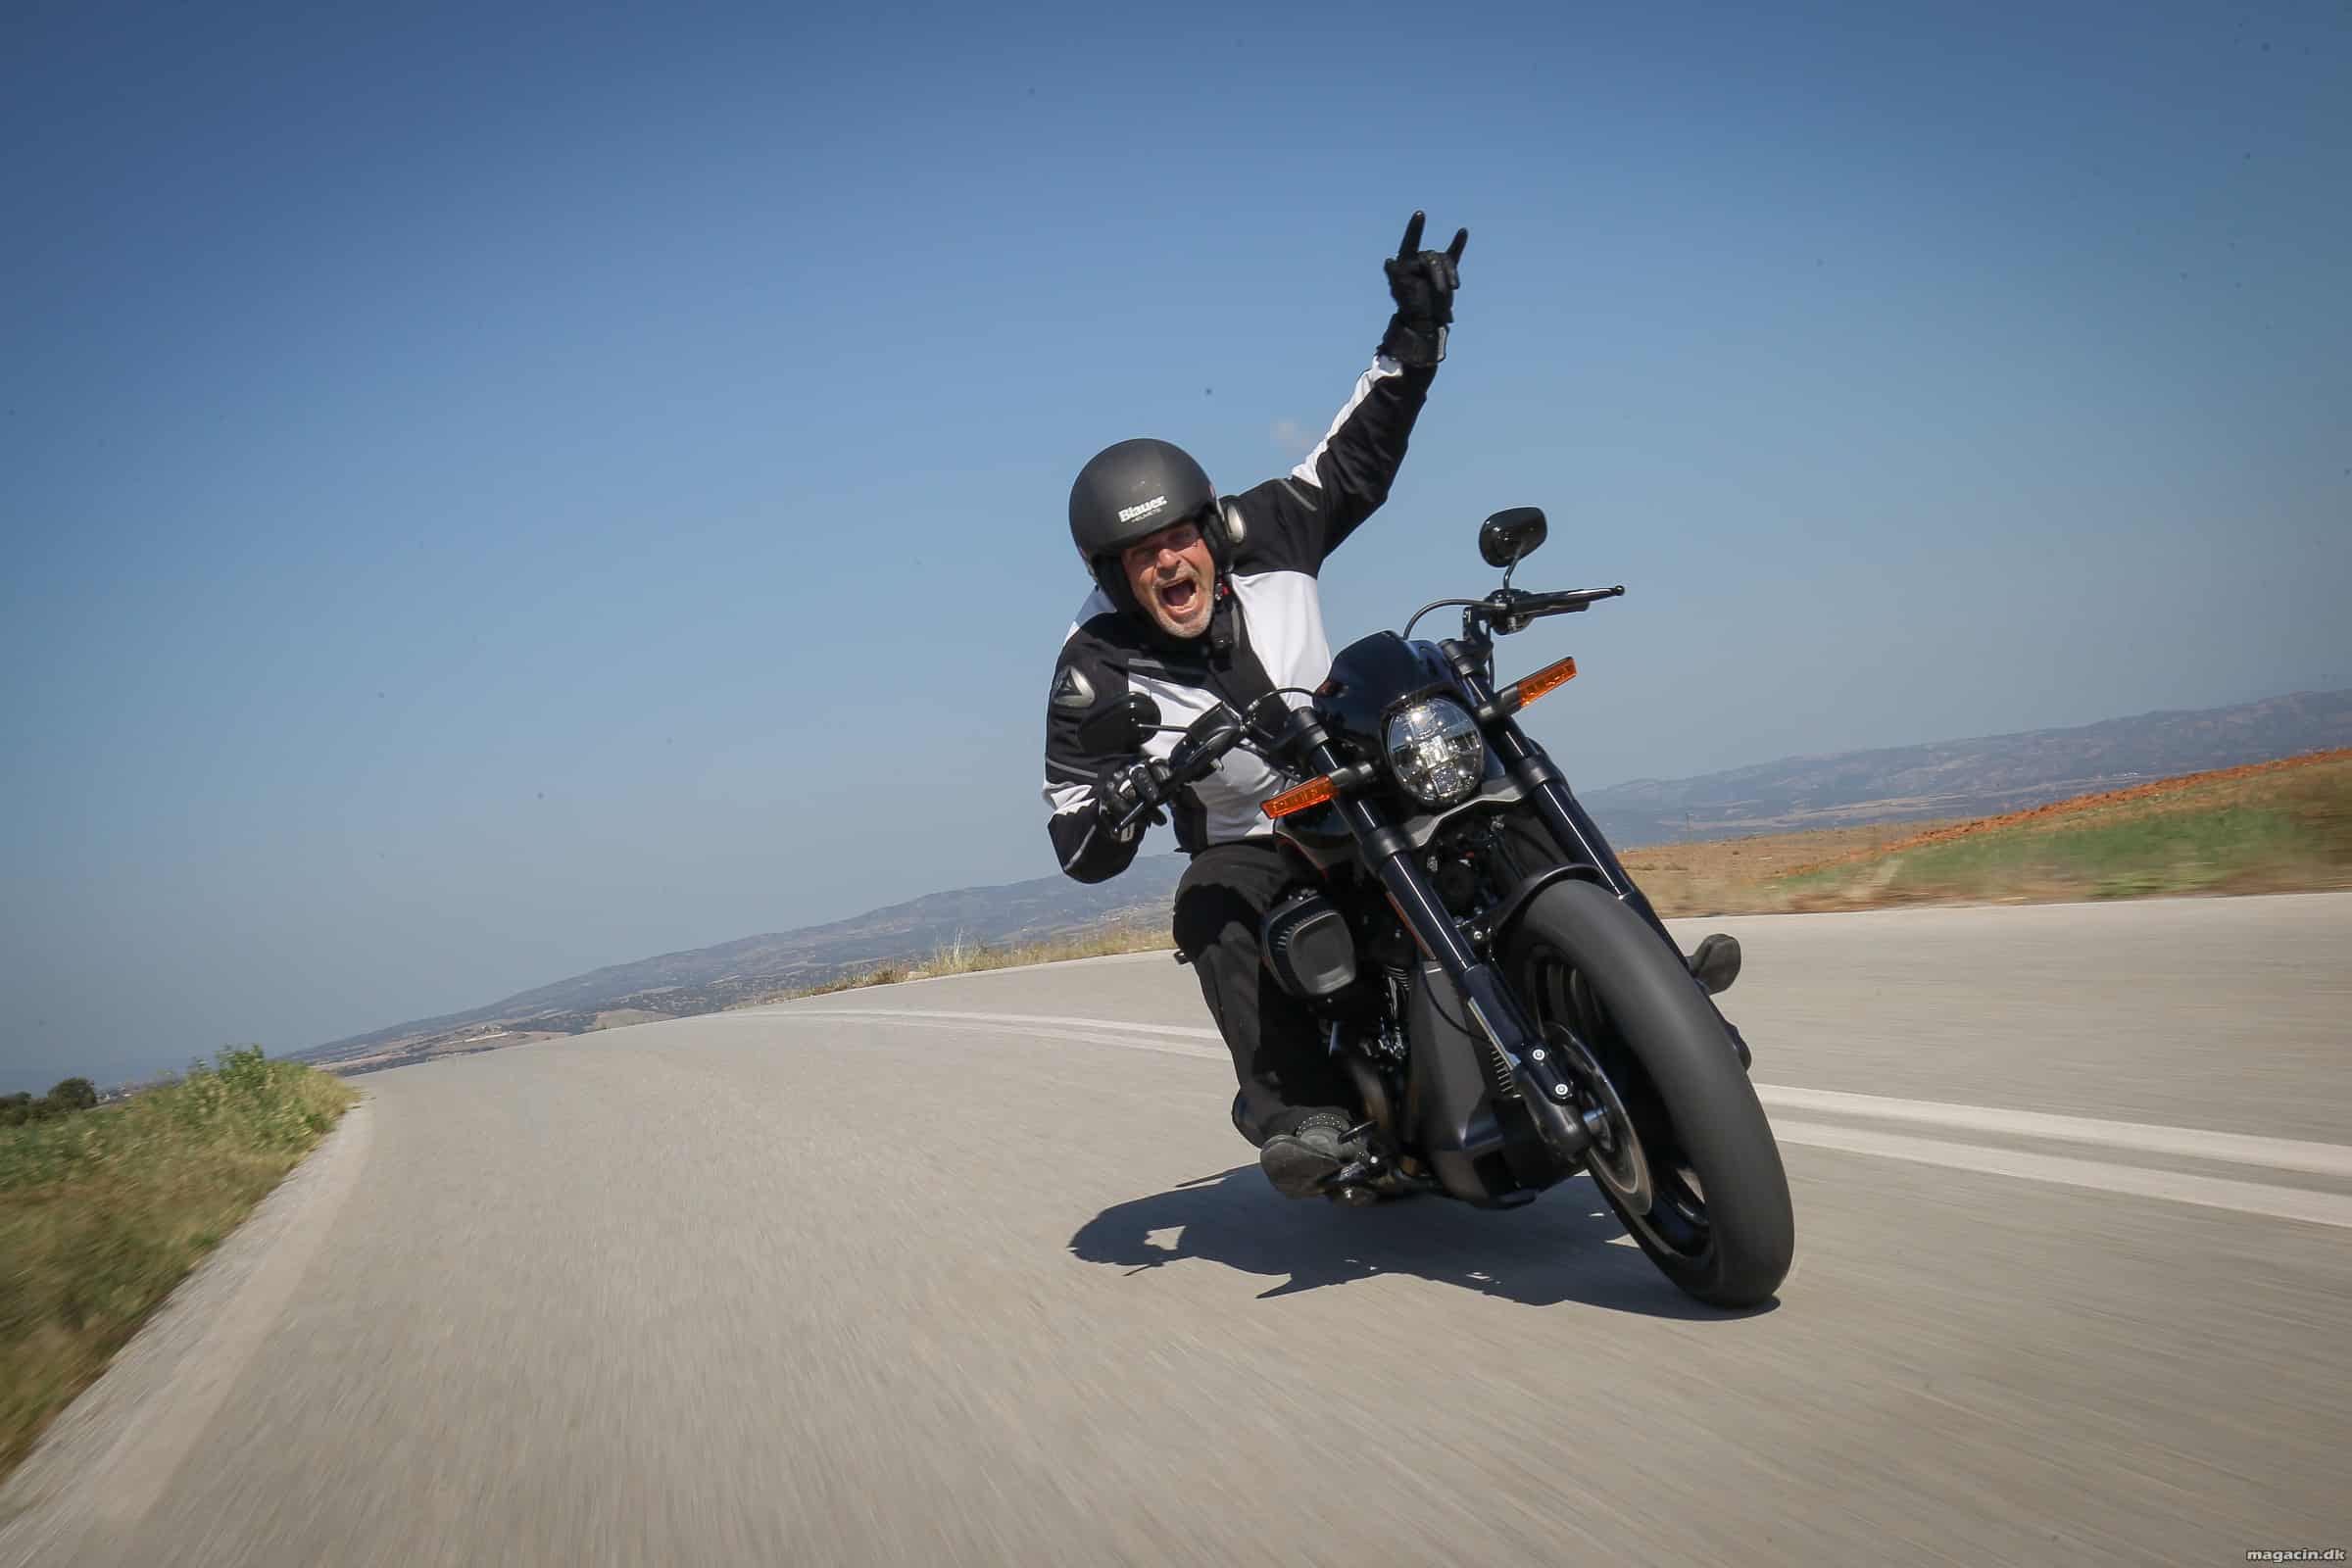 Test: 2018 Harley-Davidson FXDR 114 power-cruiser